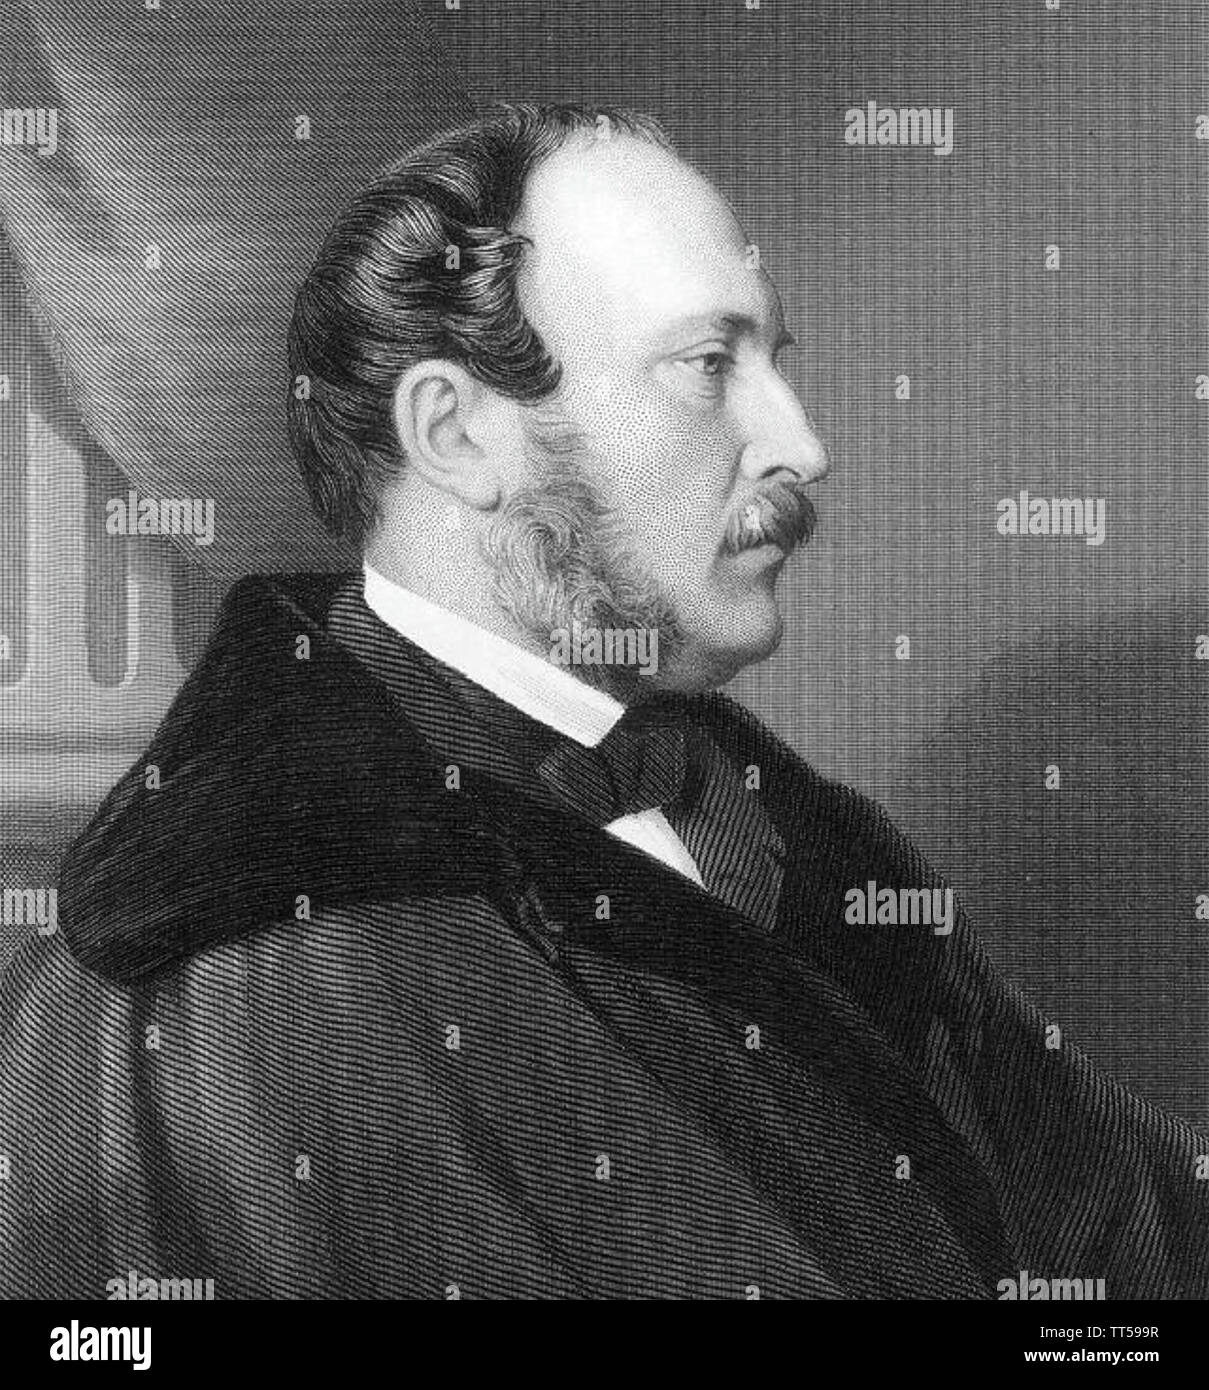 ALBERT,principe consorte (1819-1861) marito della Regina Victoria circa 1860 Foto Stock